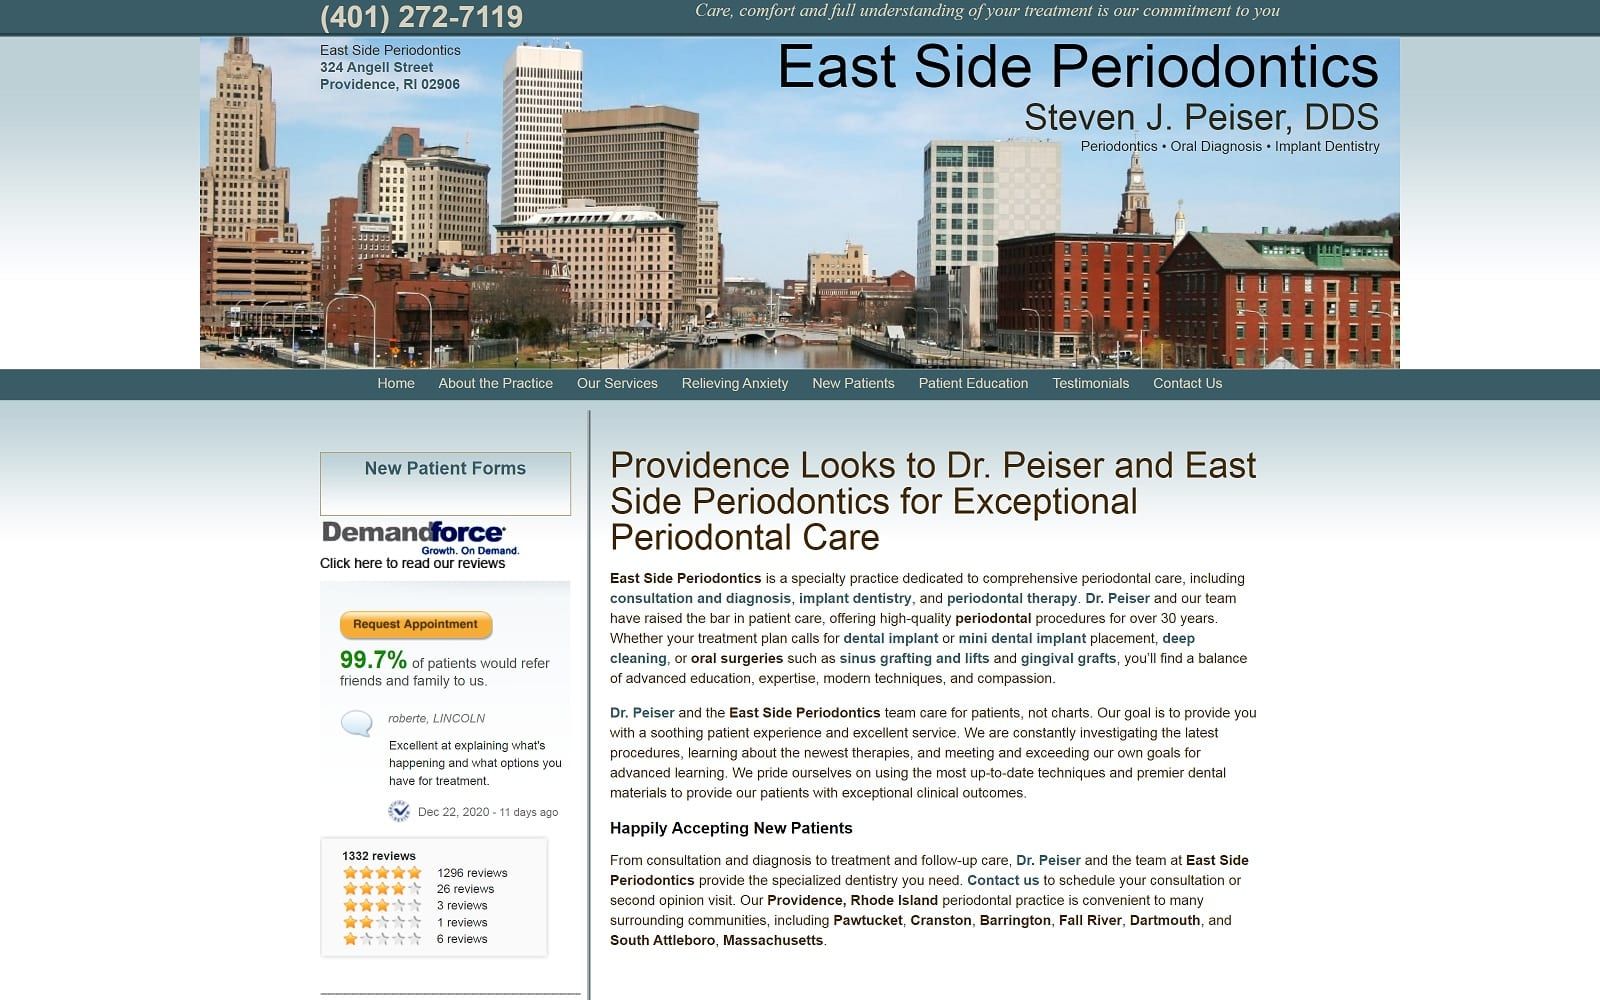 The screenshot of eastside periodontics drpeiserperio. Com dr. Steven j. Peiser website